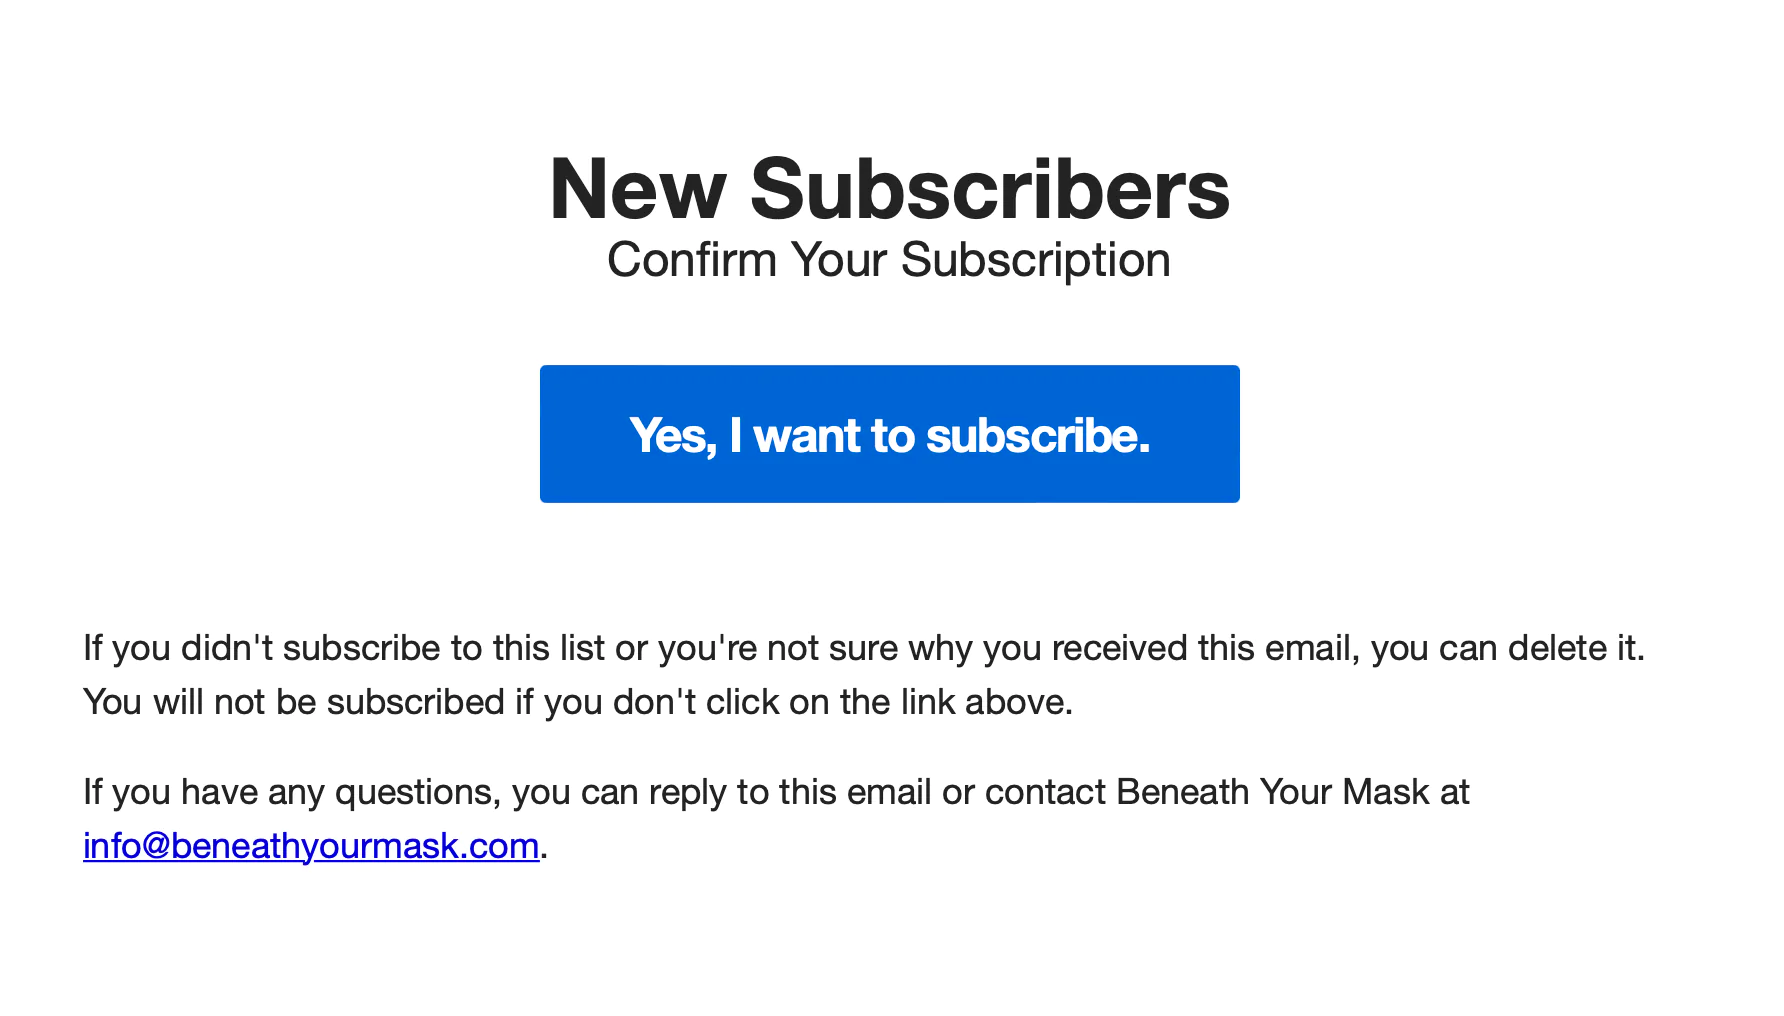 来自 Beneath Your Mask 的电子邮件要求新订阅者使用亮蓝色“是的，我想订阅”按钮确认他们的电子邮件地址。